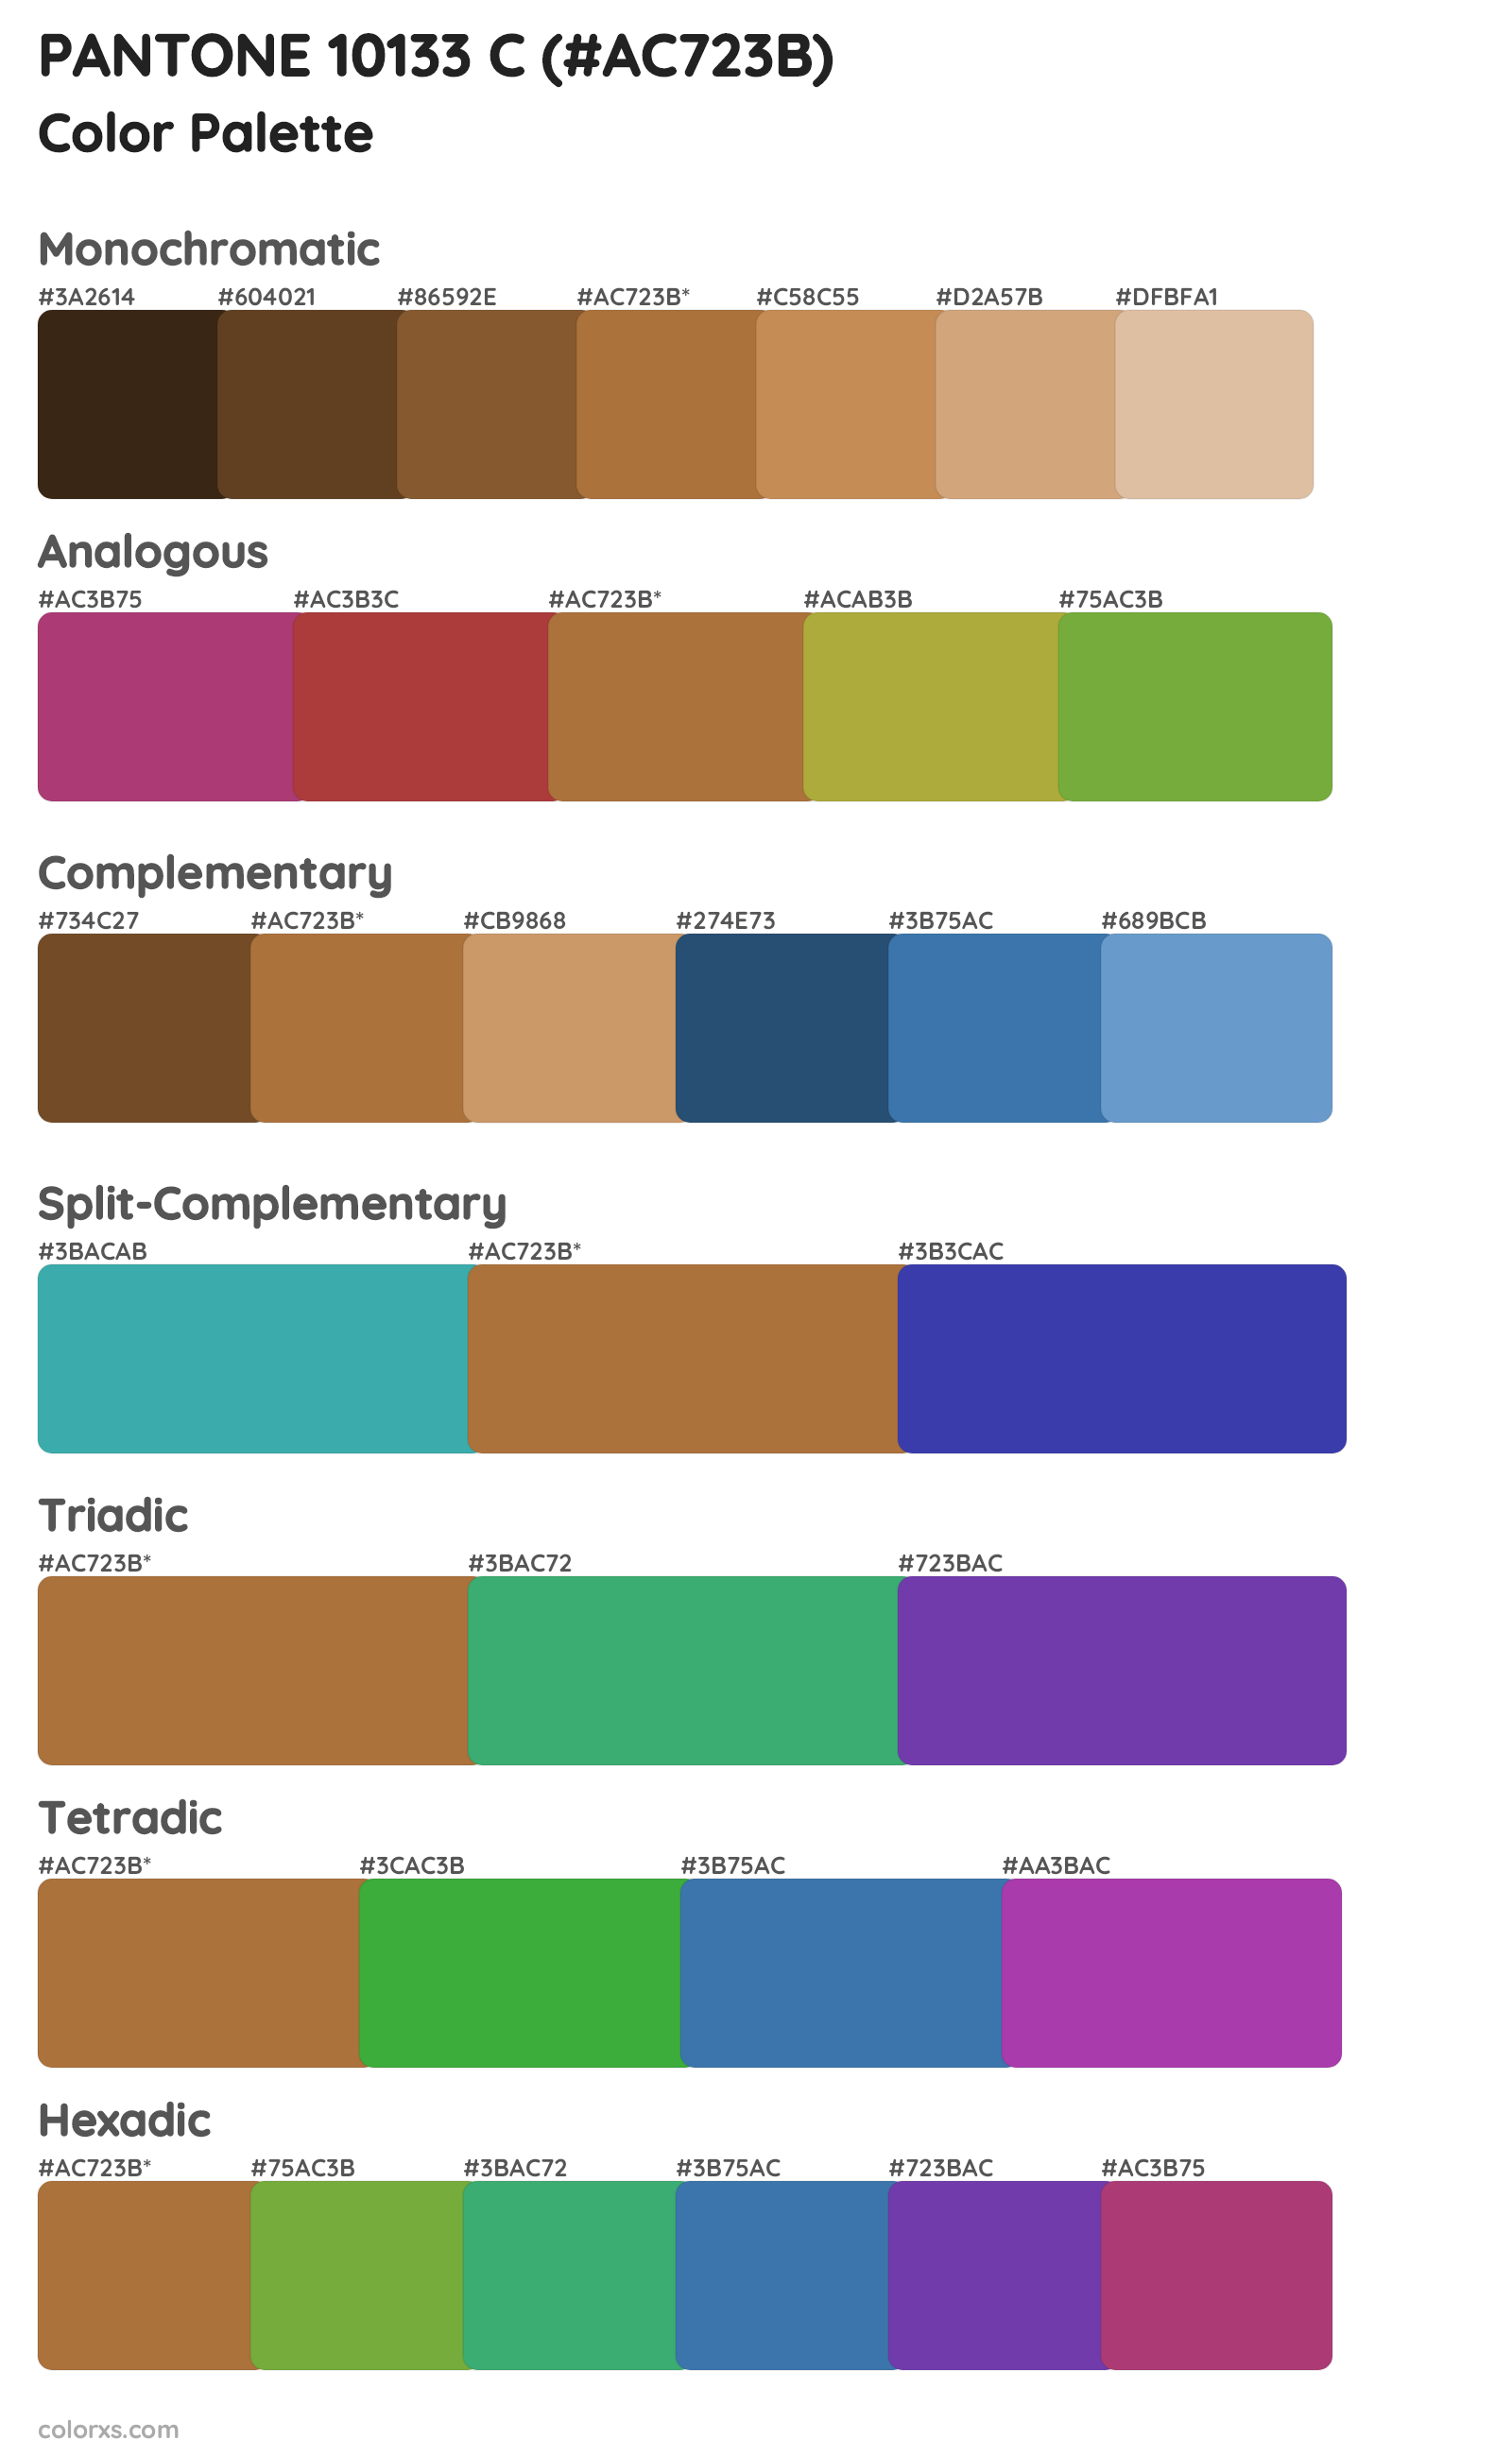 PANTONE 10133 C Color Scheme Palettes